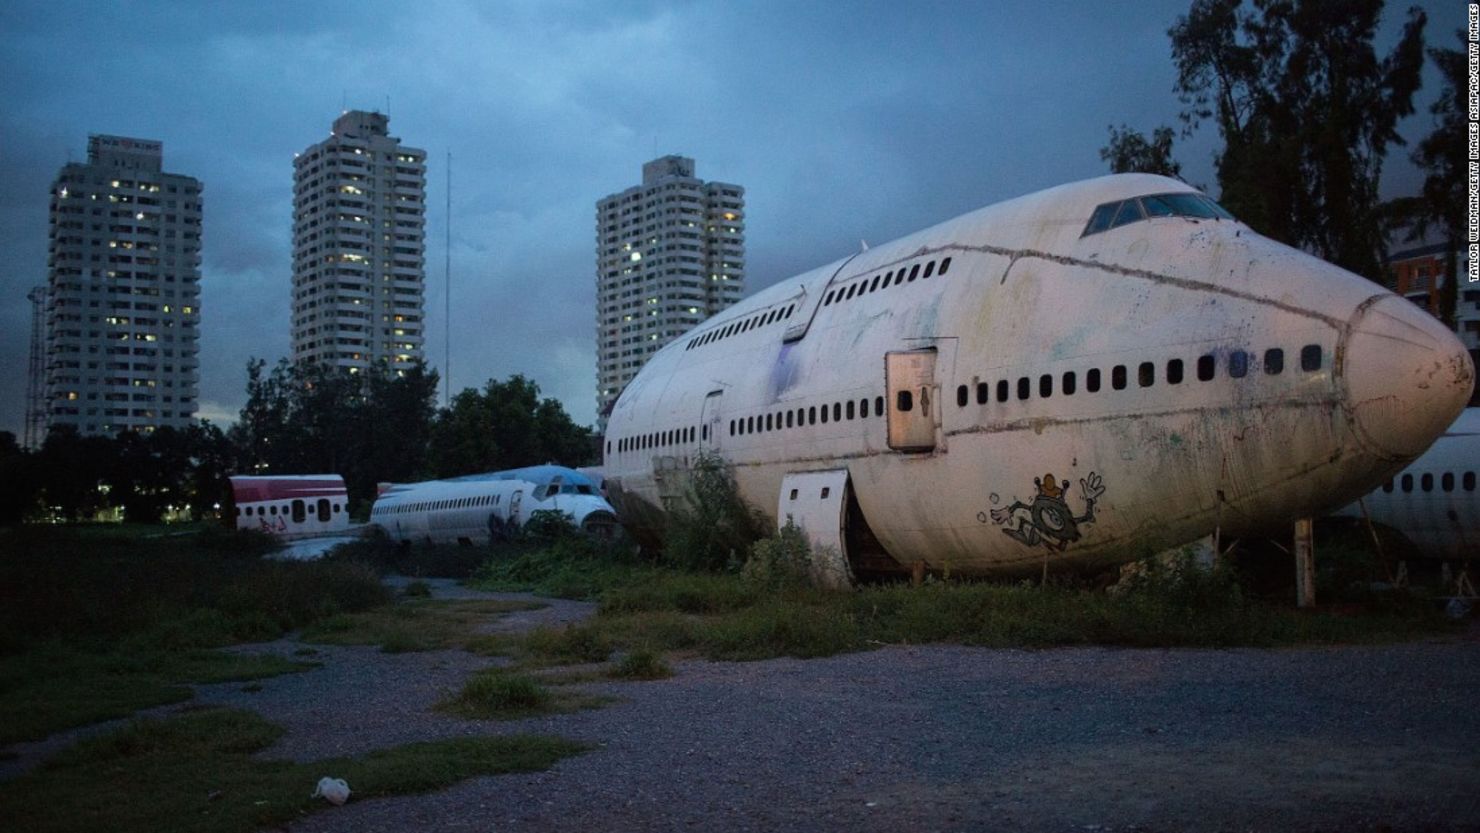 En un populoso barrio de Bangkok, el fotógrafo Taylor Weidman documentó cómo personas sin techo viven dentro de los restos de varias  aeronaves, en un panteón de aviones.